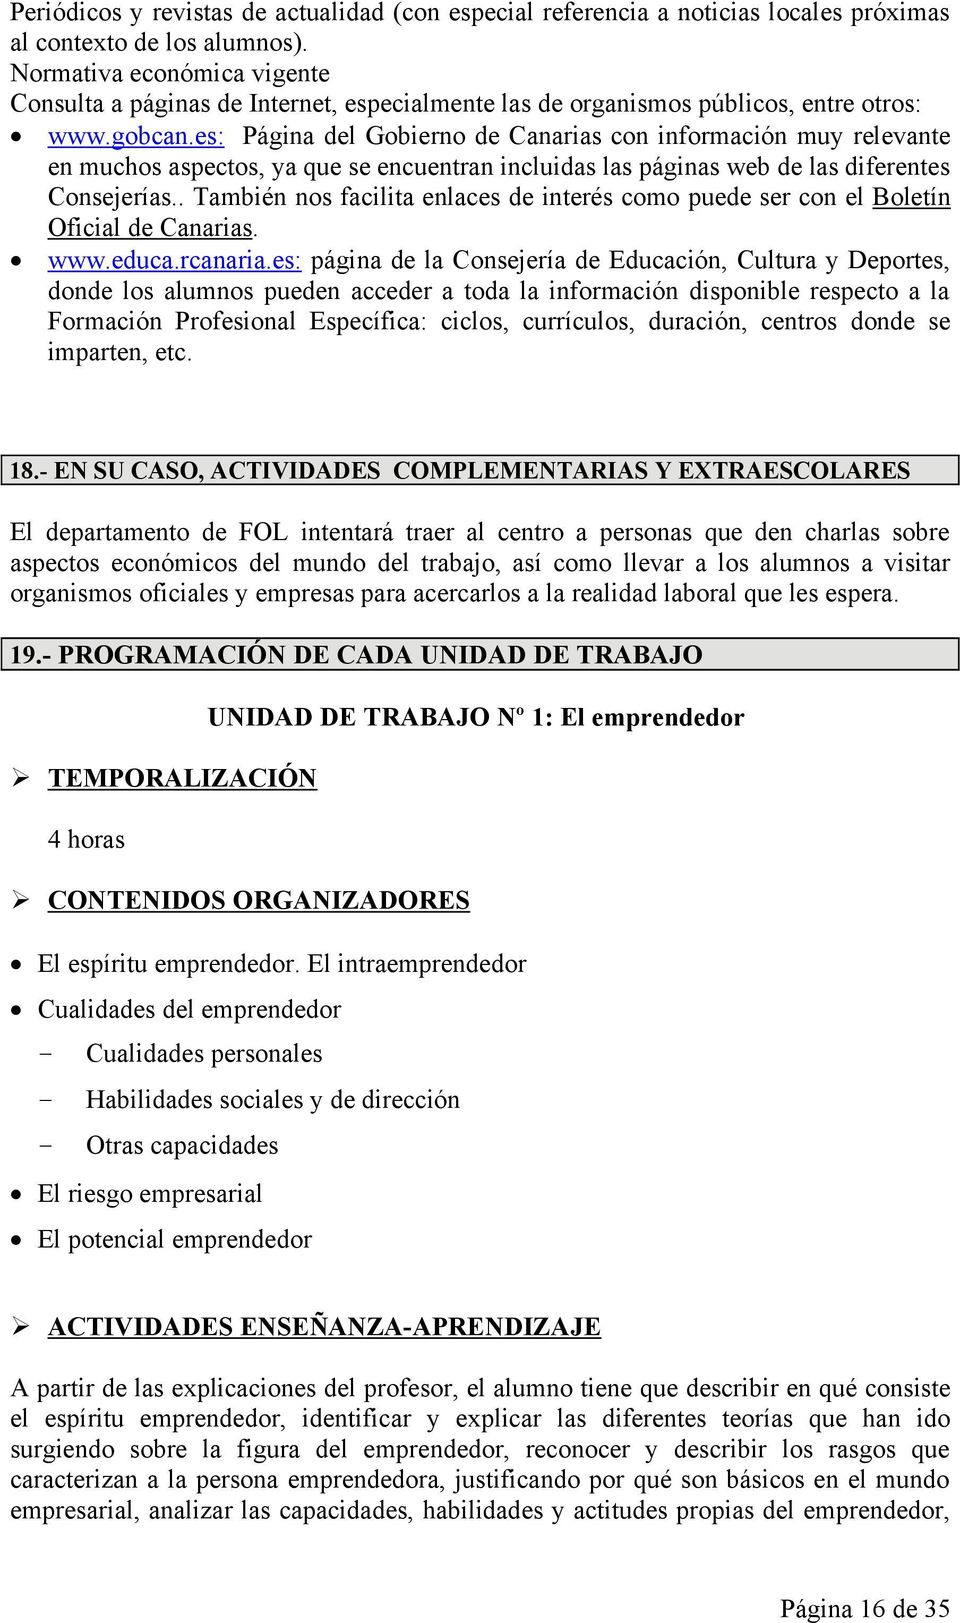 es: Página del Gobierno de Canarias con información muy relevante en muchos aspectos, ya que se encuentran incluidas las páginas web de las diferentes Consejerías.